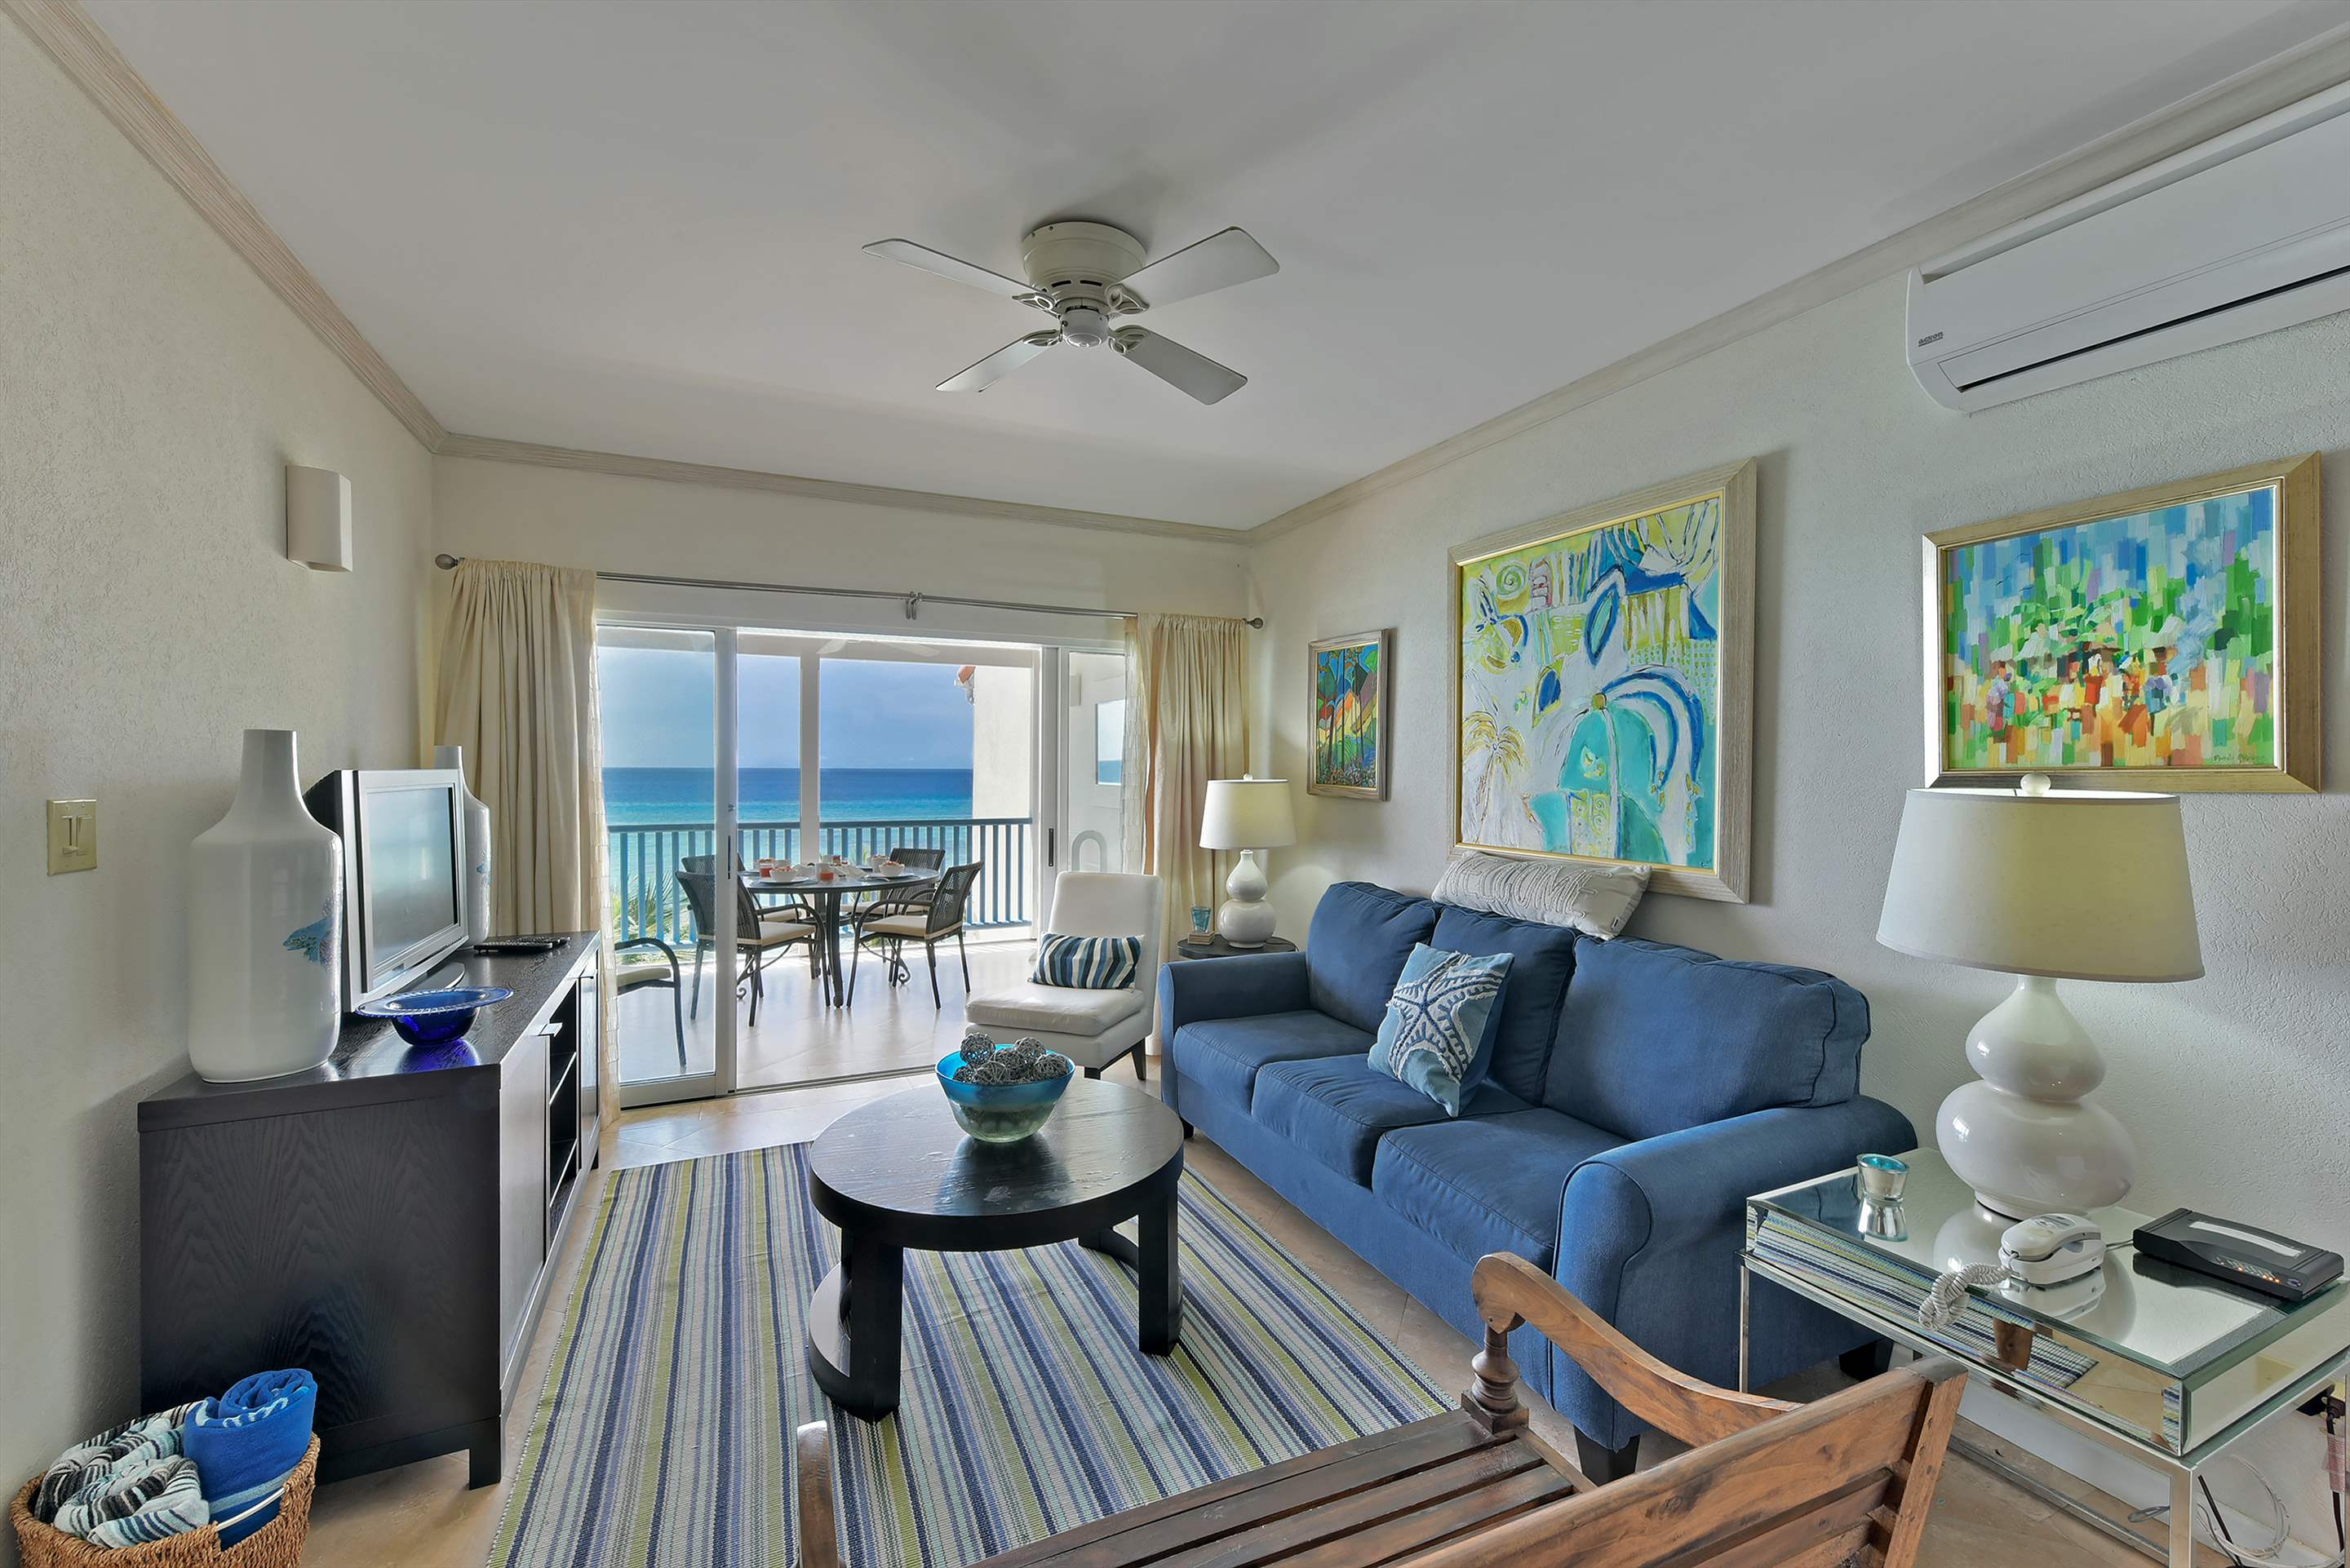 Maxwell Beach Villas 502, 2 bedroom, 2 bedroom villa in St. Lawrence Gap & South Coast, Barbados Photo #4